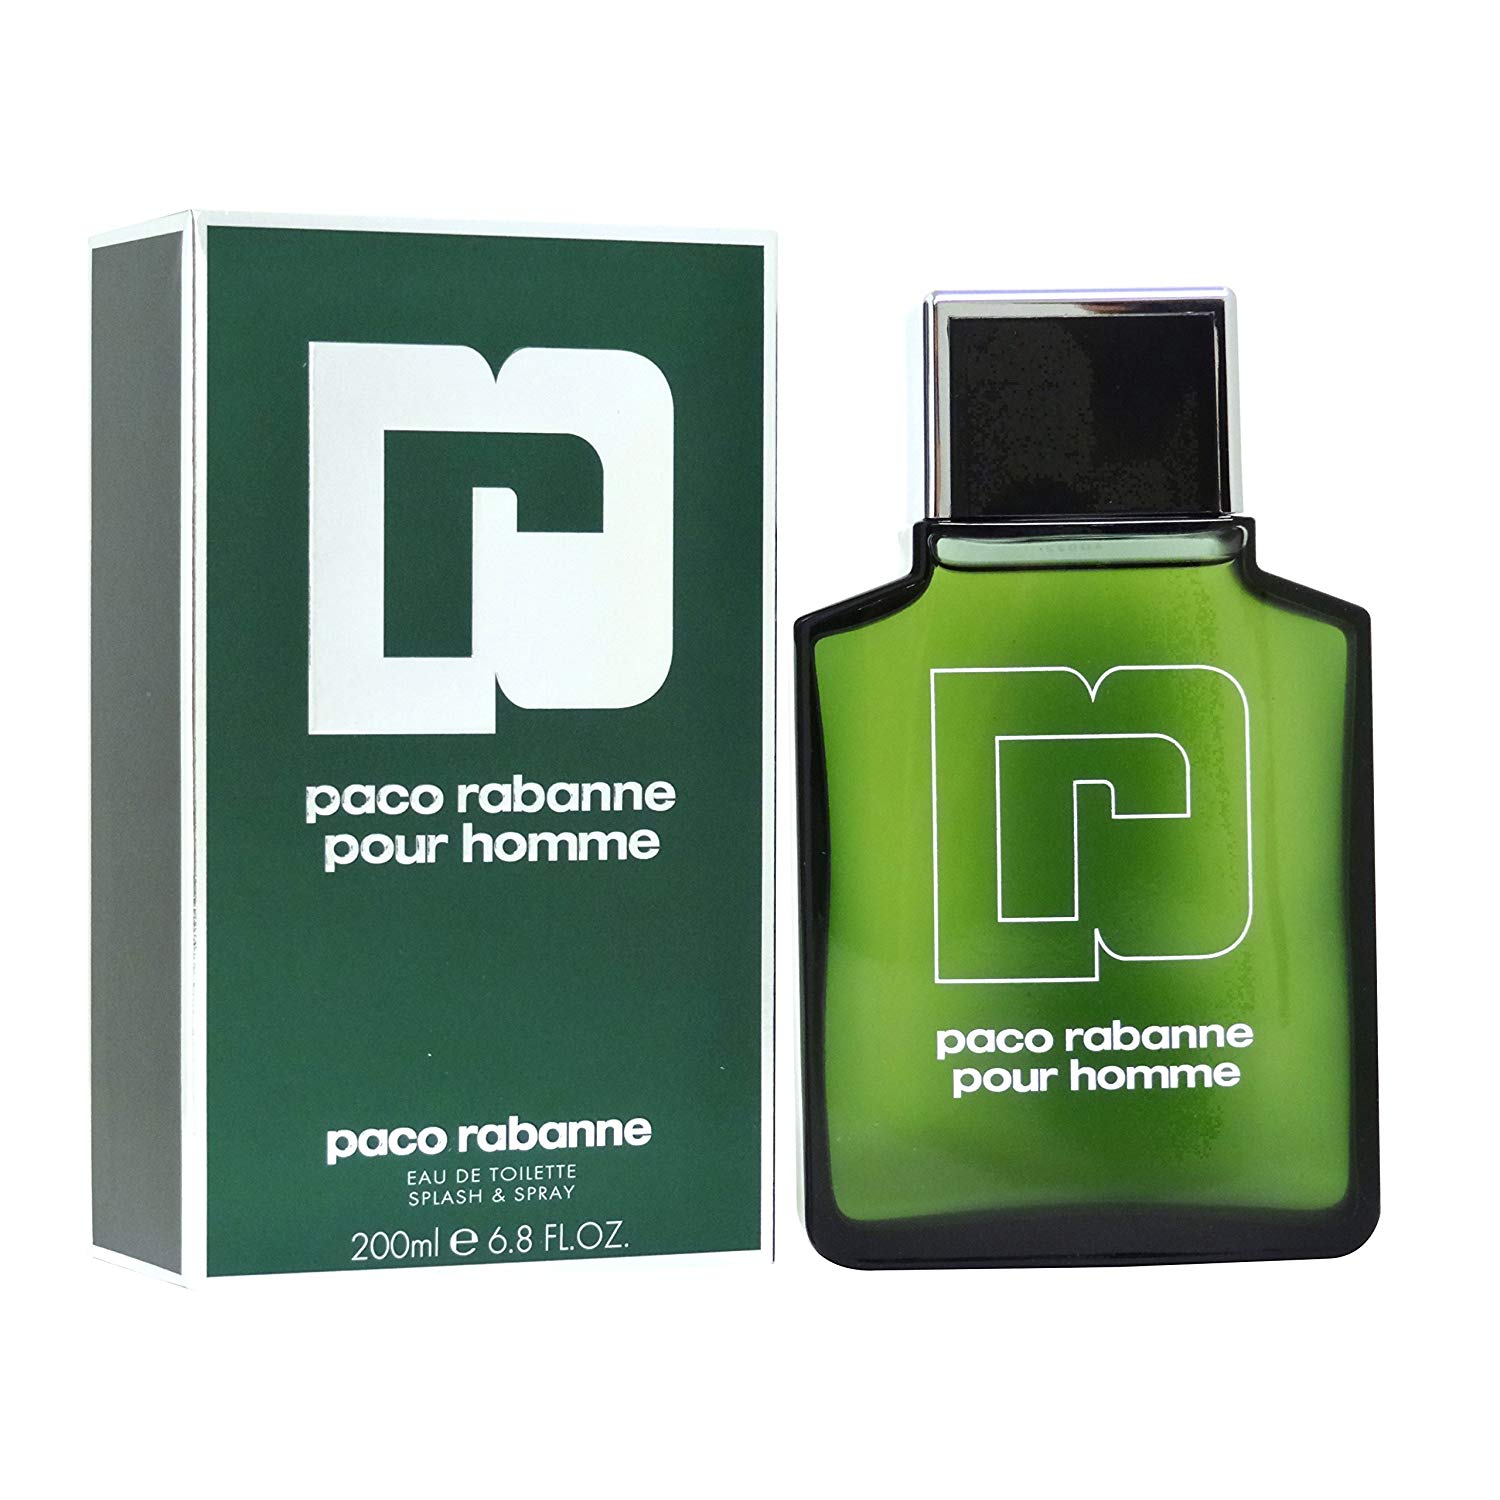 Paco rabanne homme. Paco Rabanne Perfume for men. Paco Rabanne Eau de Toilette natural Spray 100ml 3.4 FL oz.. Paco Rabanne 60 мл. Paco Rabanne pour homme 100 мл.